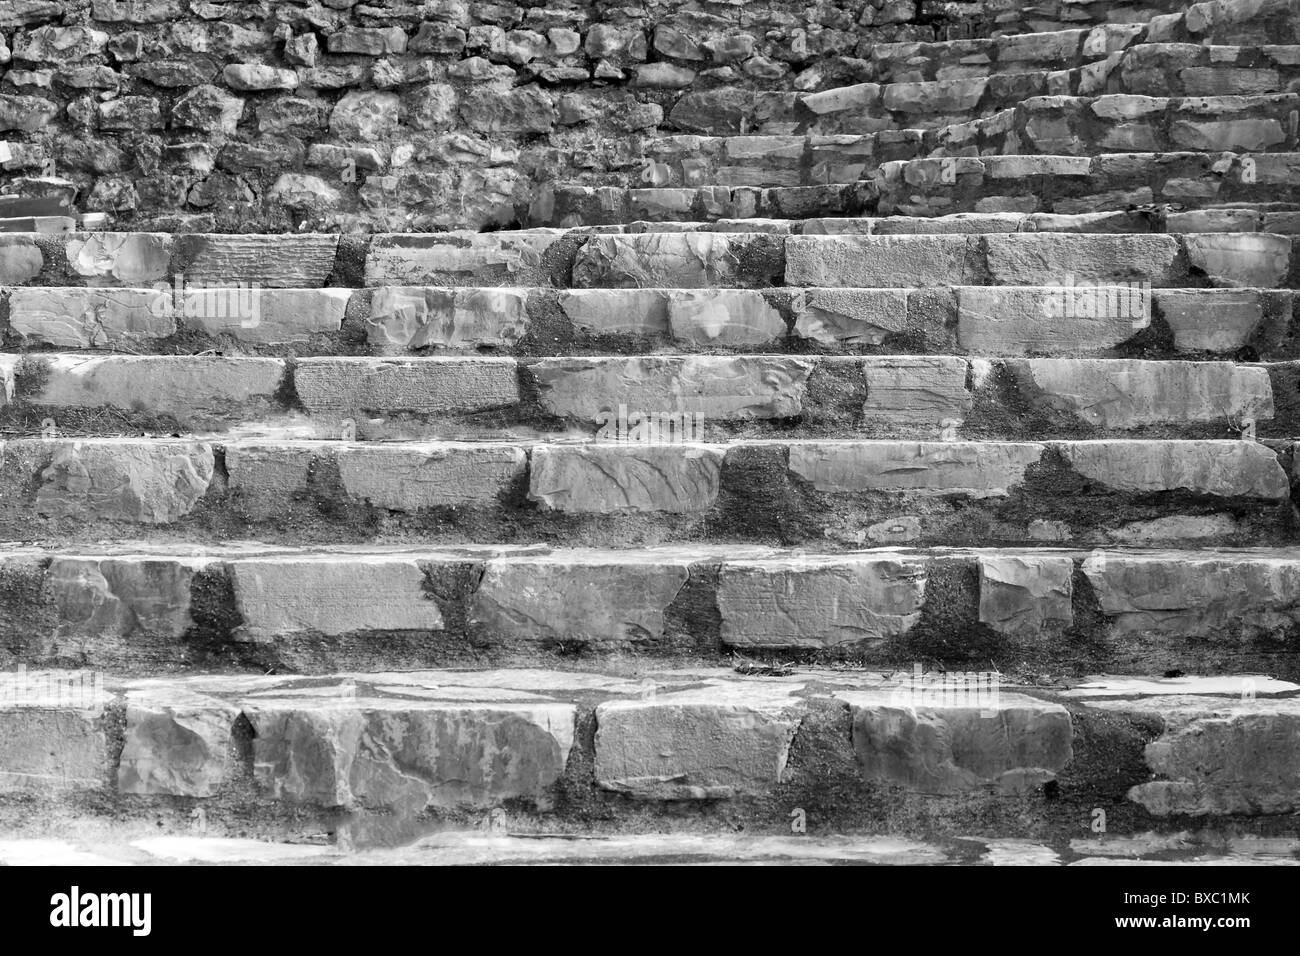 Escaleras De Piedra Artificial Con Muro De Piedra En Antecedentes Fotografia De Stock Alamy